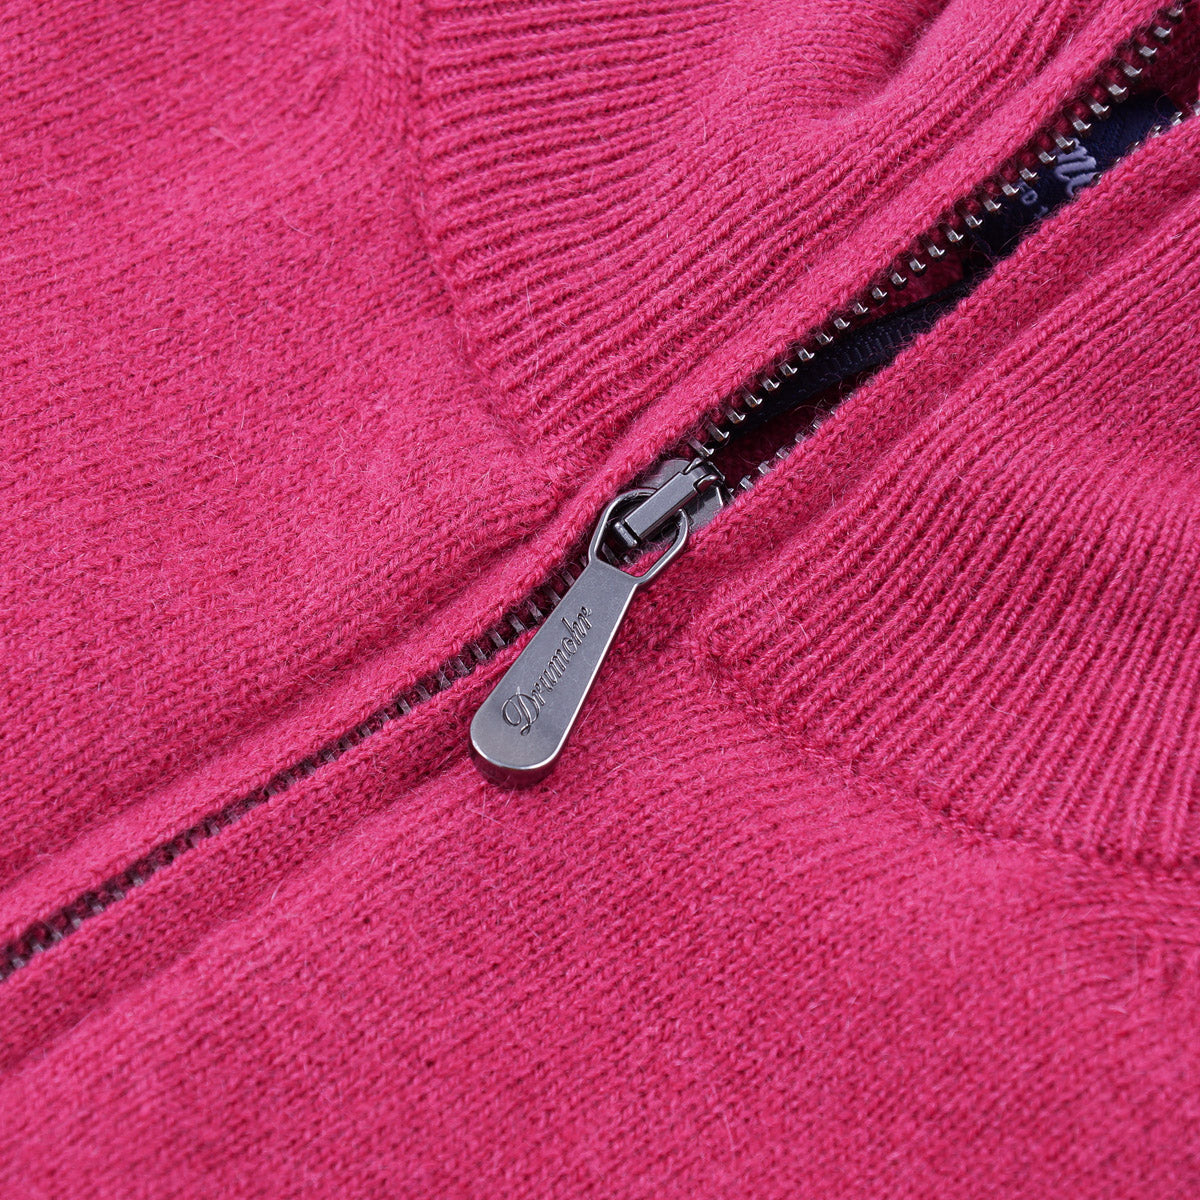 Drumohr Half-Zip Cashmere Sweater - Top Shelf Apparel